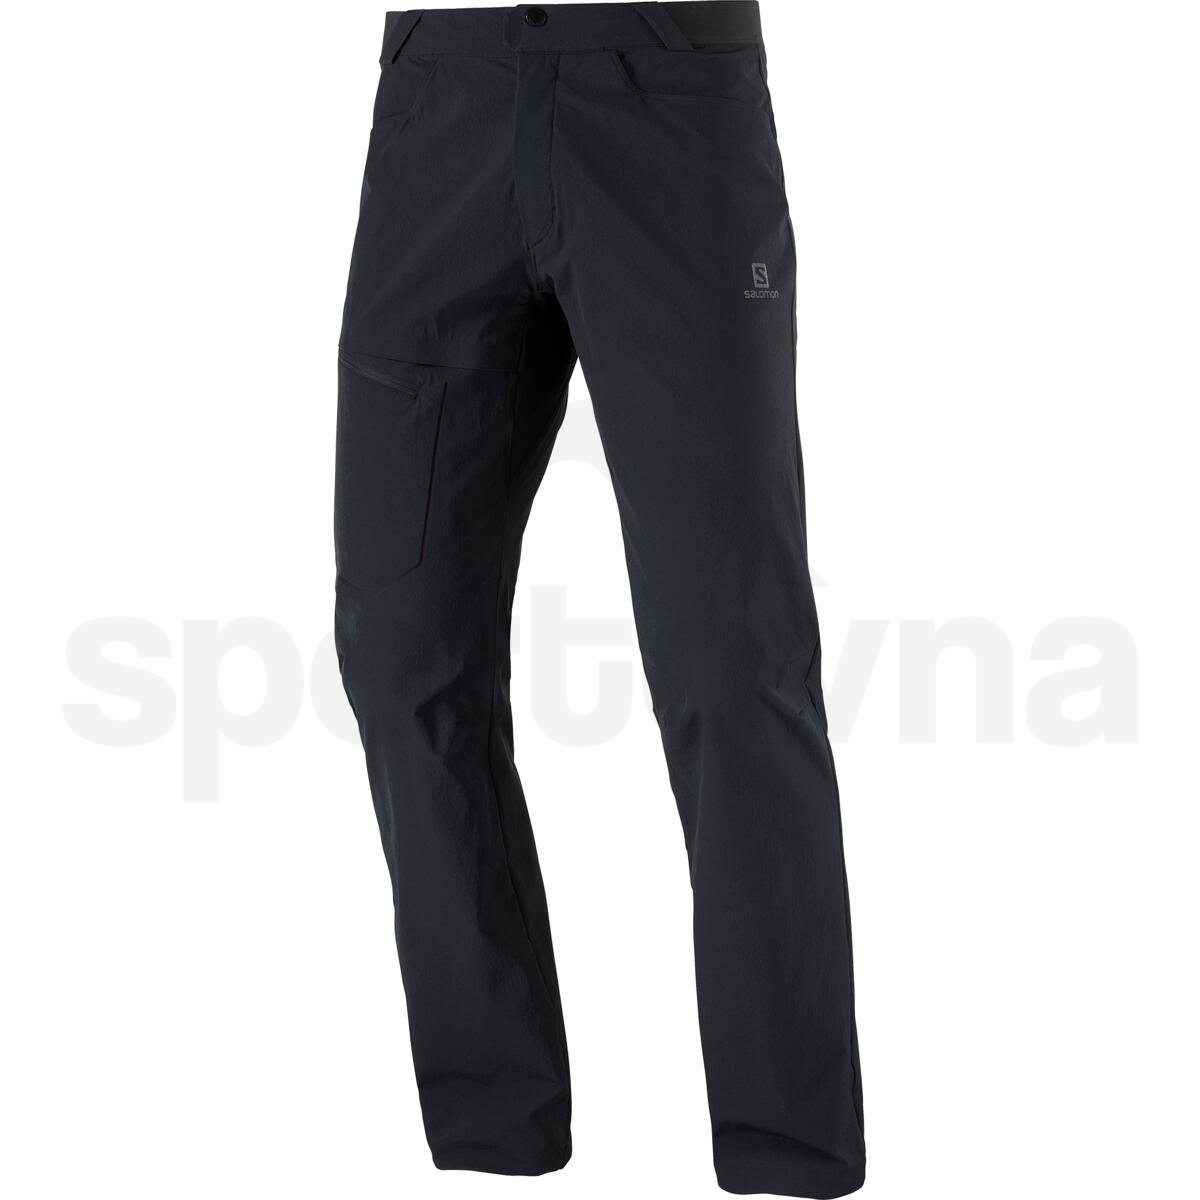 Kalhoty Salomon WAYFARER PANTS M - černá (zkrácená délka)